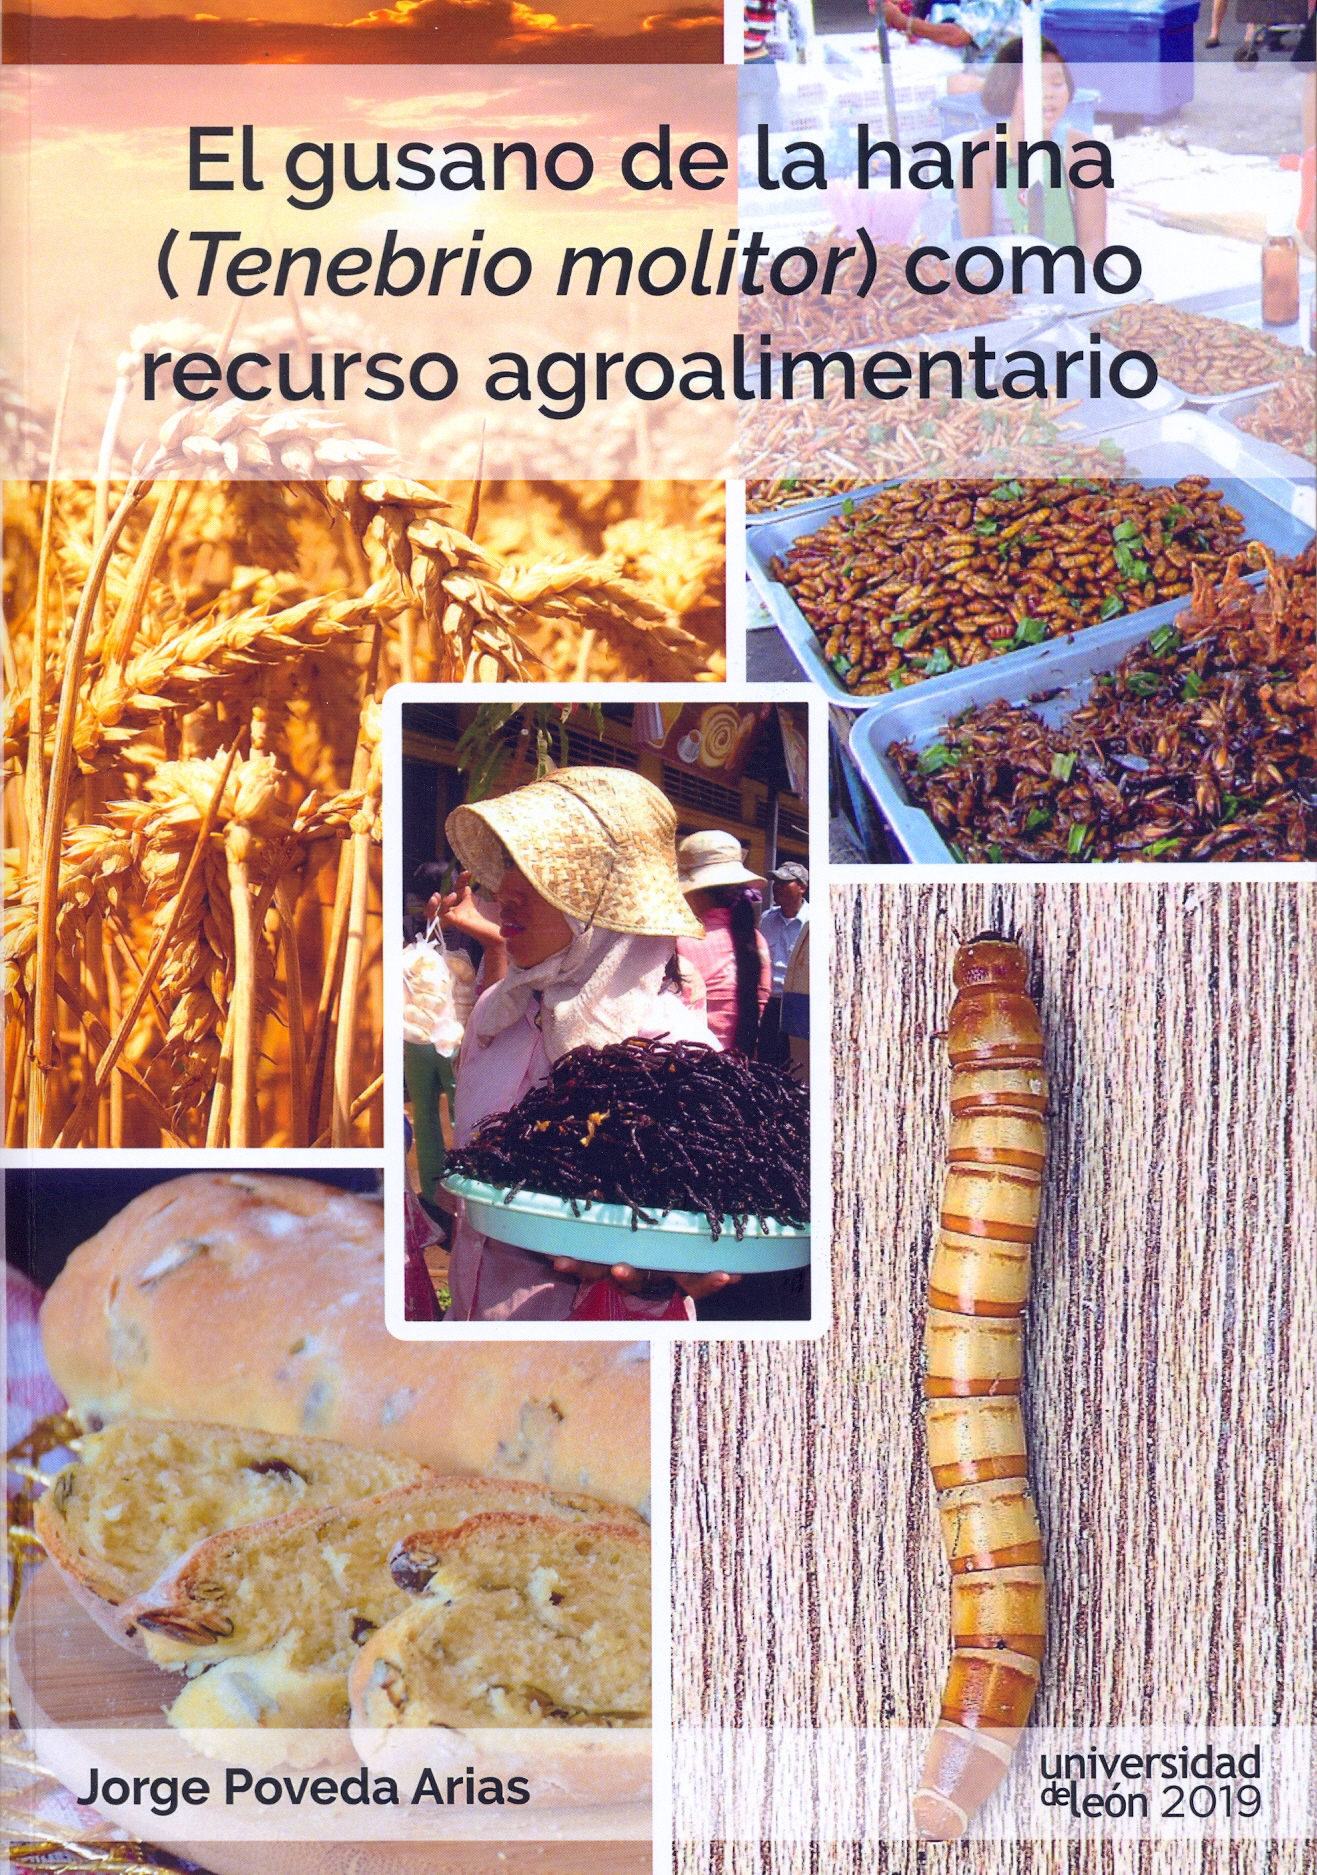 Imagen de portada del libro El gusano de la harina ("Tenebrio molitor") como recurso agroalimentario